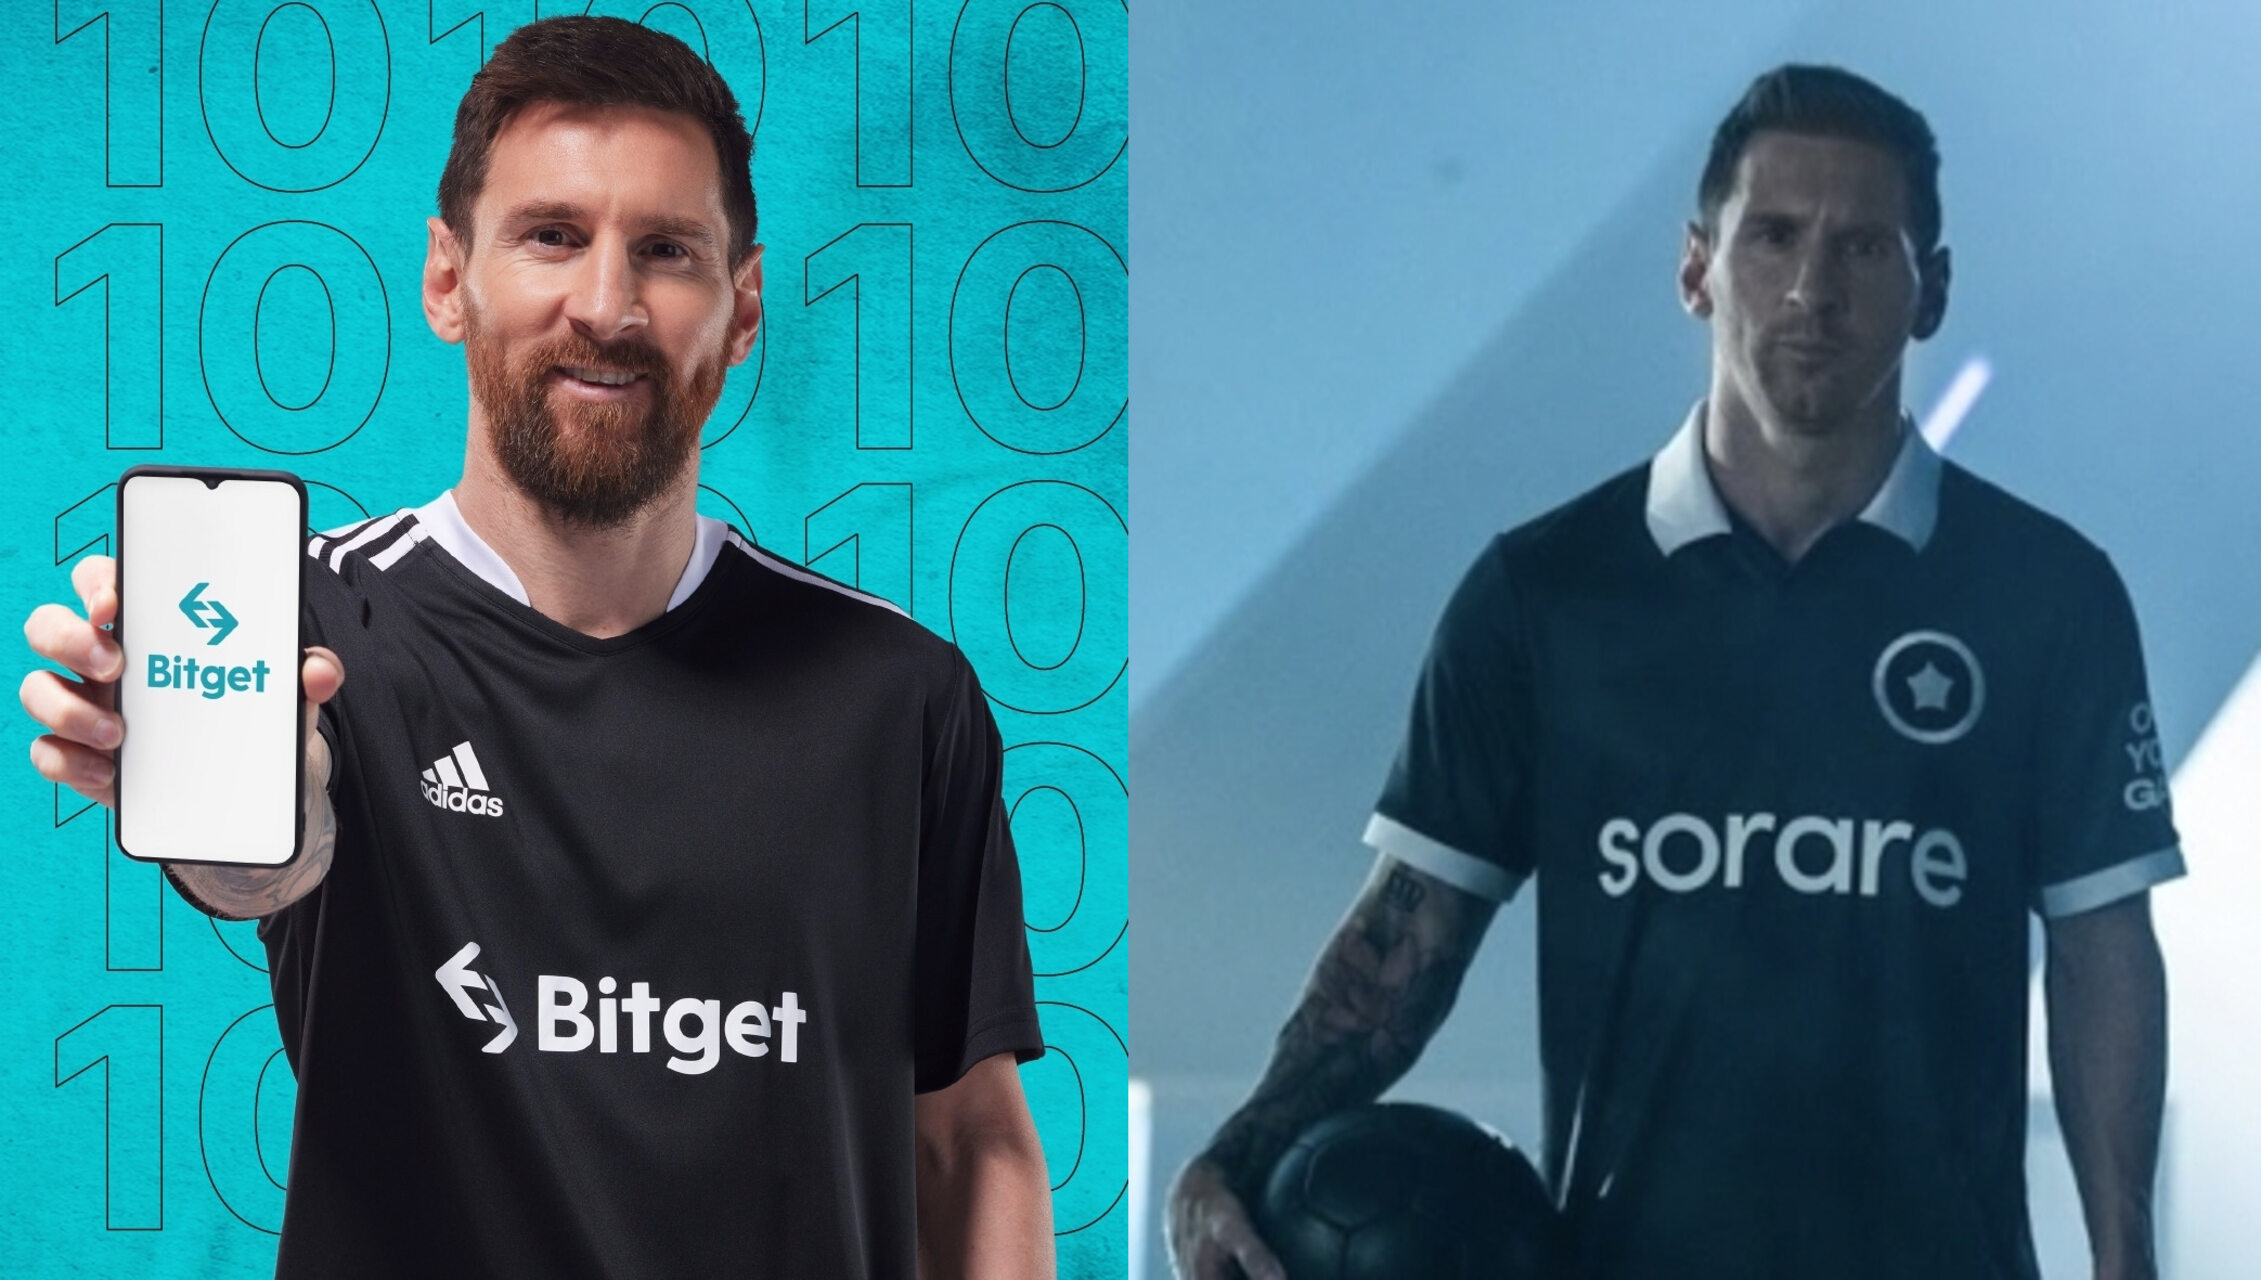 ການຮ່ວມມືຍຸດທະສາດຂອງ Bitget ແລະ Sorare ກັບ Lionel Messi